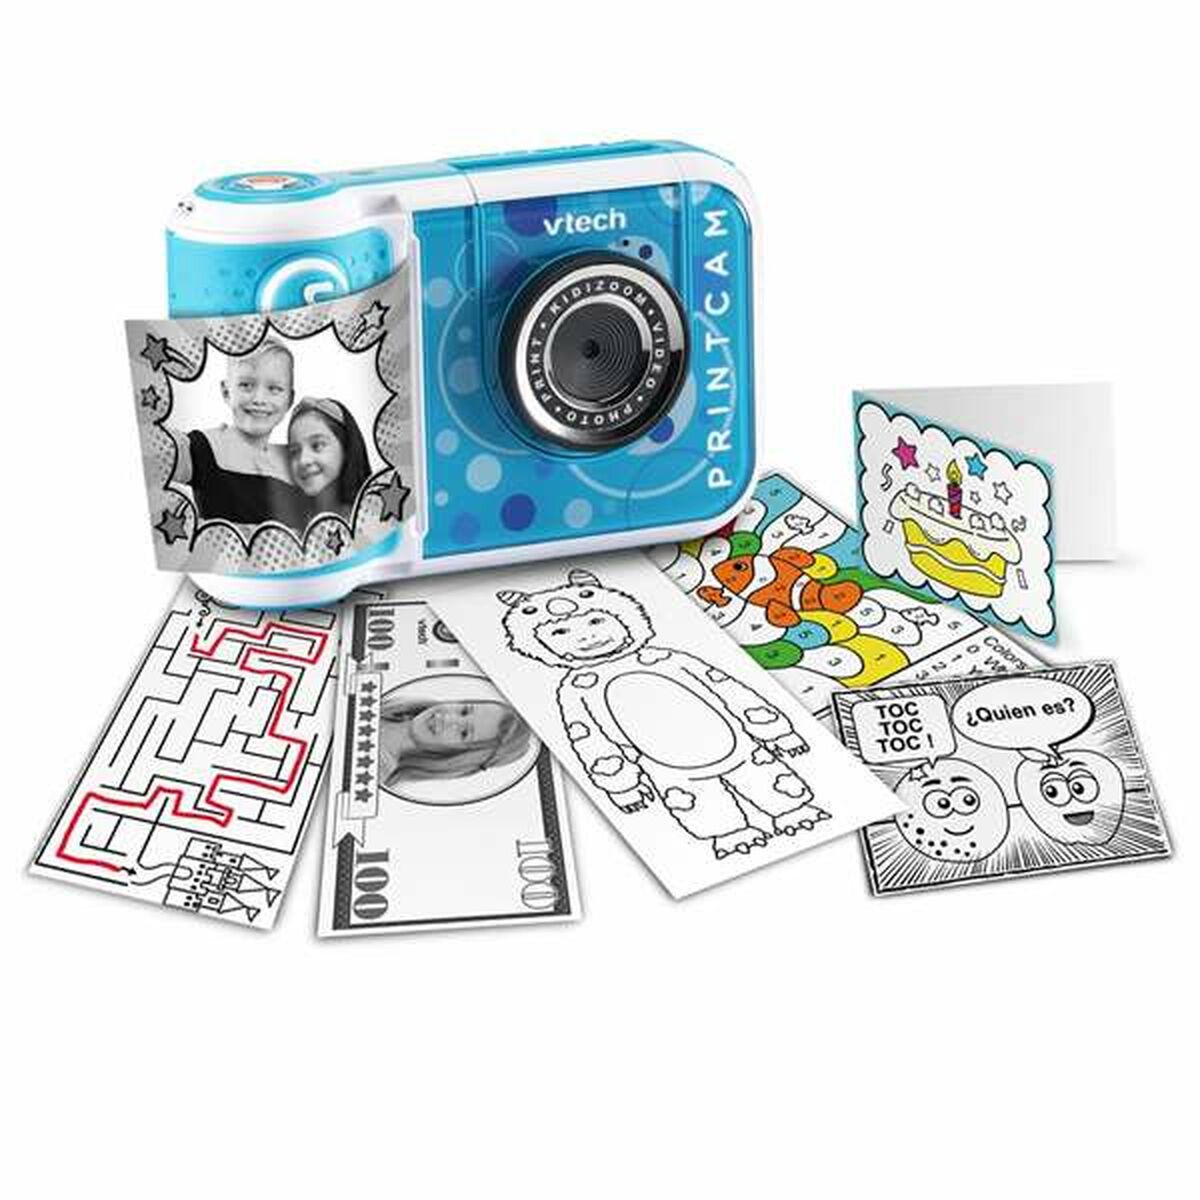 Fotocamera Digitale per Bambini Vtech Kidizoom Print - Disponibile in 3-4 giorni lavorativi